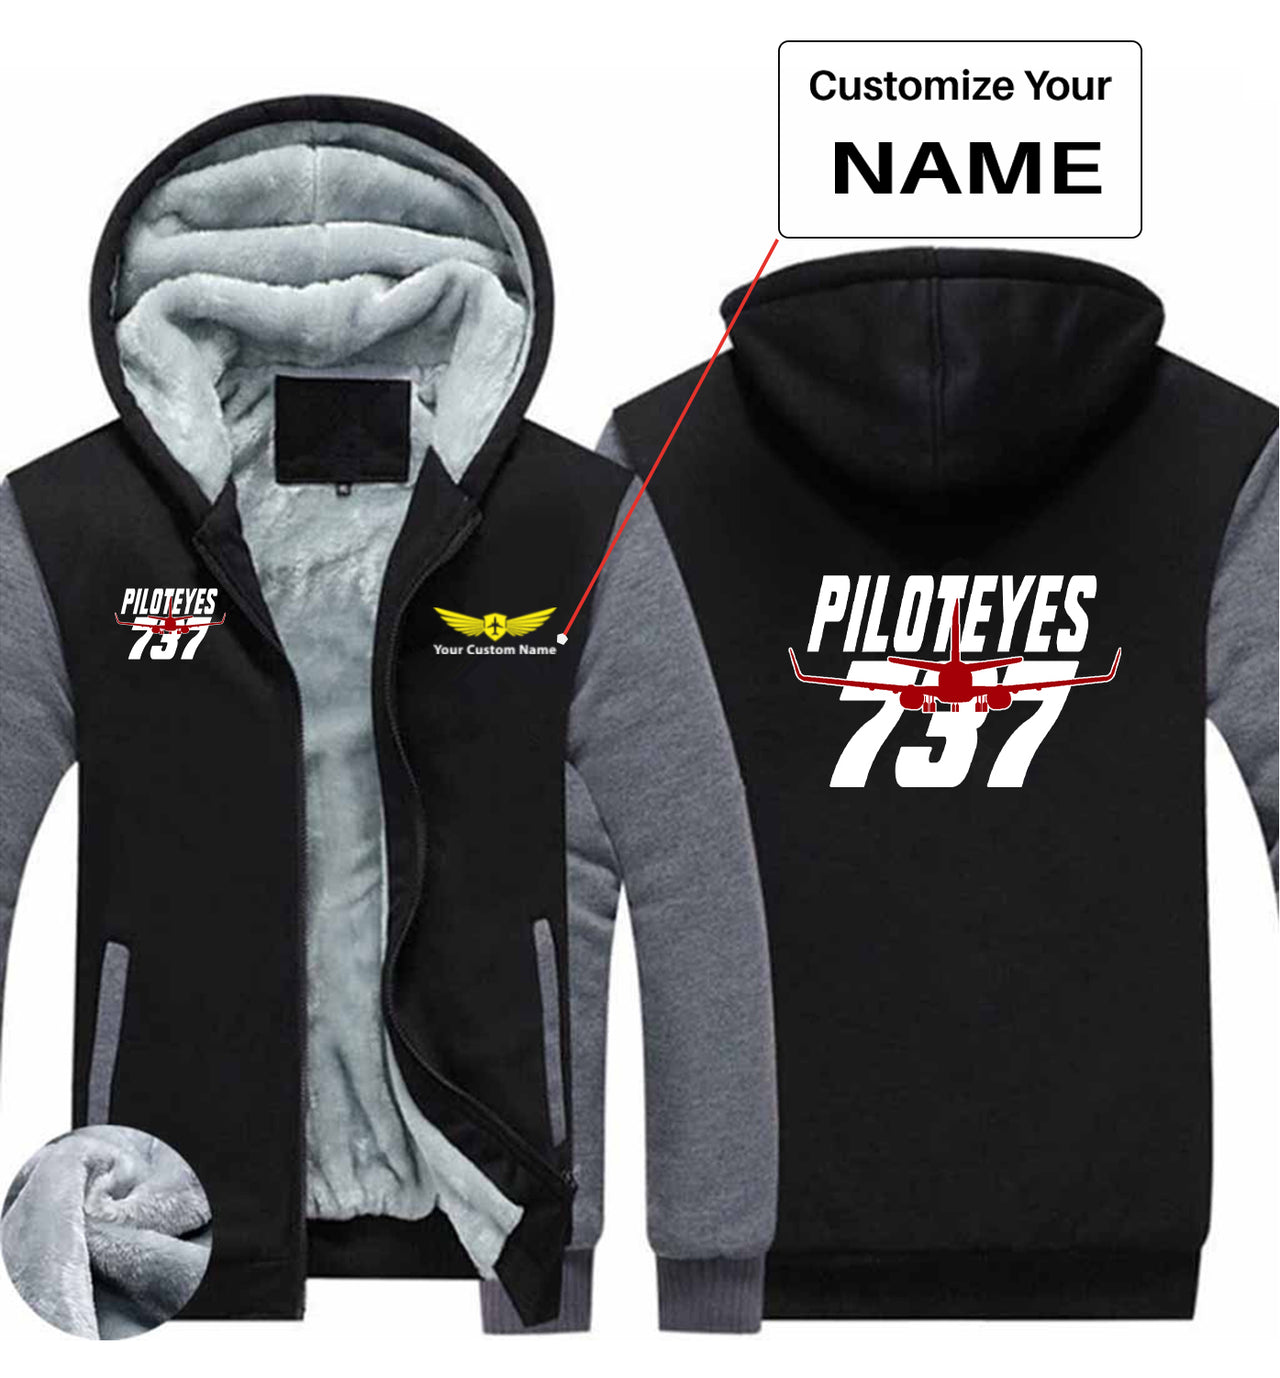 Amazing Piloteyes737 Designed Zipped Sweatshirts